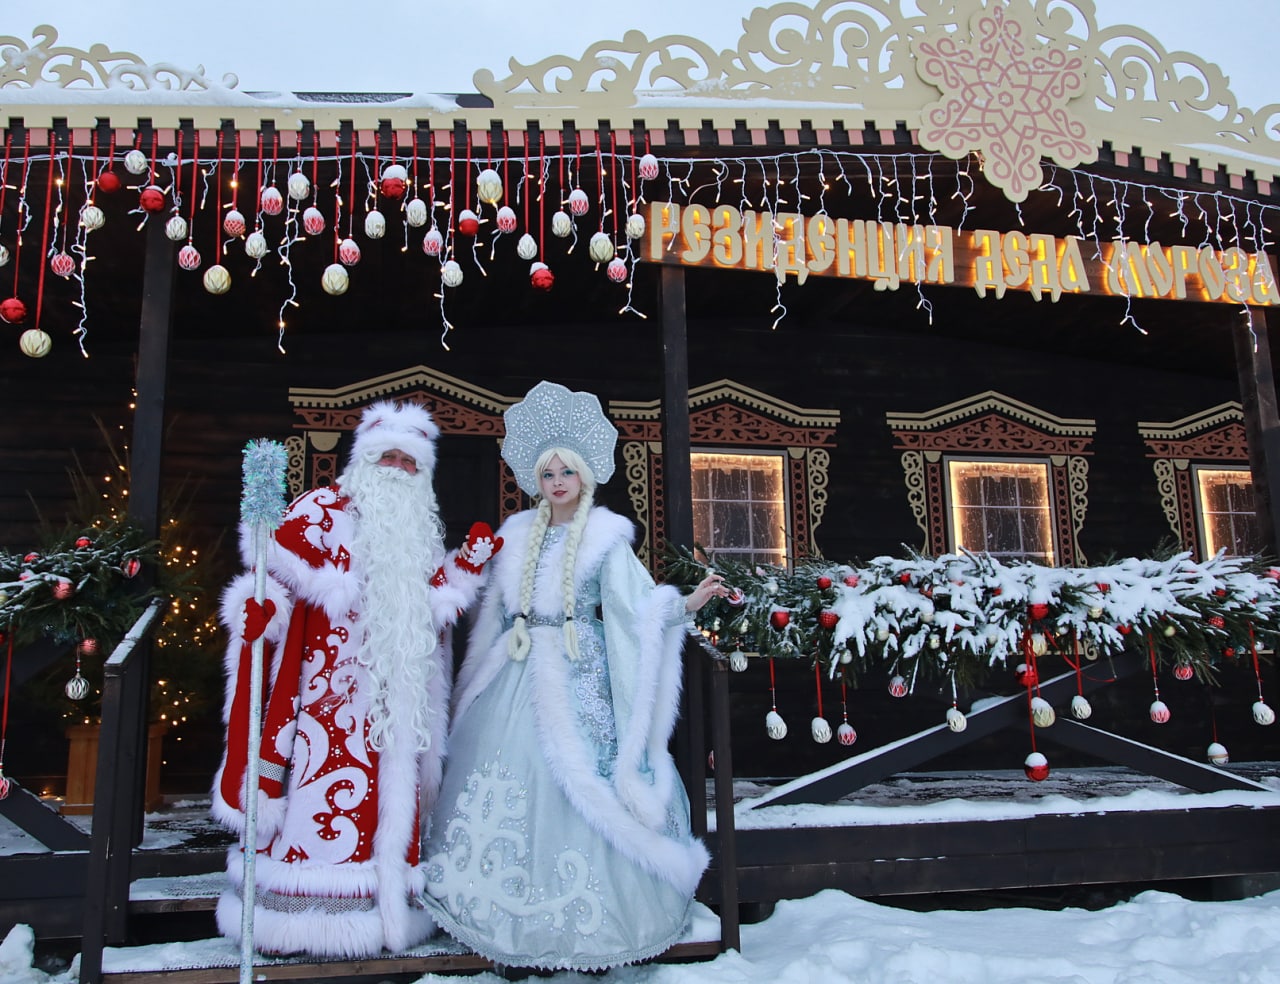 Фото: Пресс-служба Нижегородской ярмарки